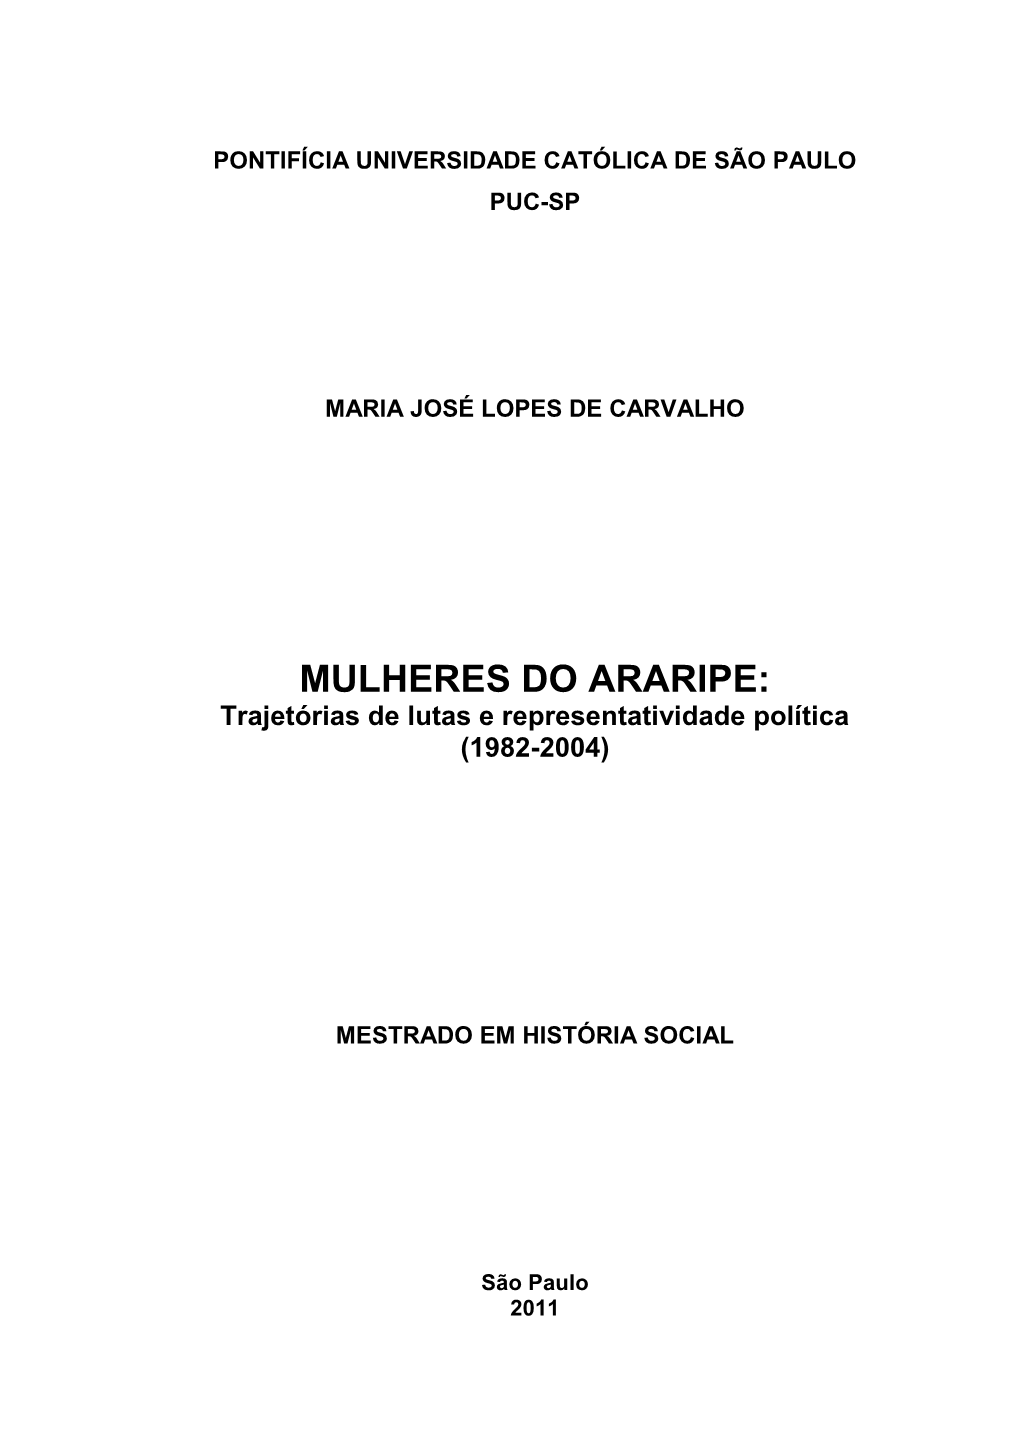 MULHERES DO ARARIPE: Trajetórias De Lutas E Representatividade Política (1982-2004)